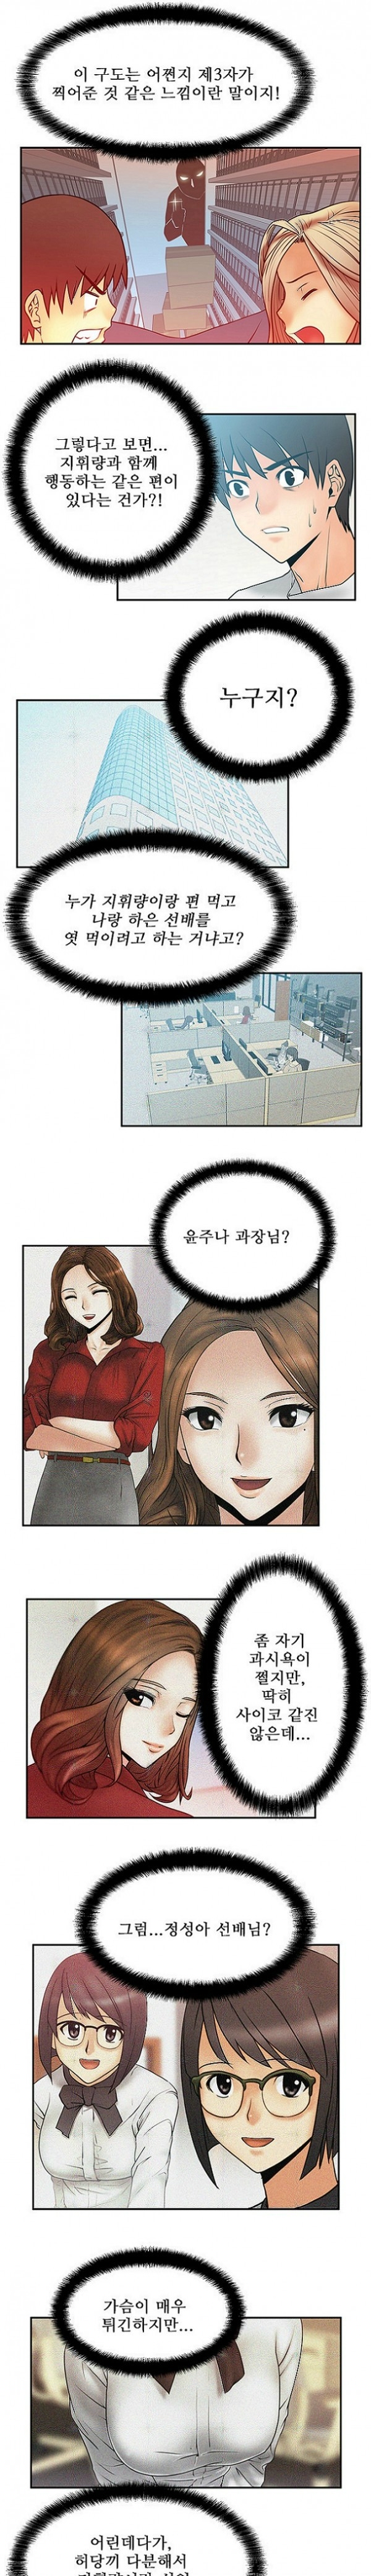 [Minu Mindu] Office Lady Vol. 1 [Korean] 71